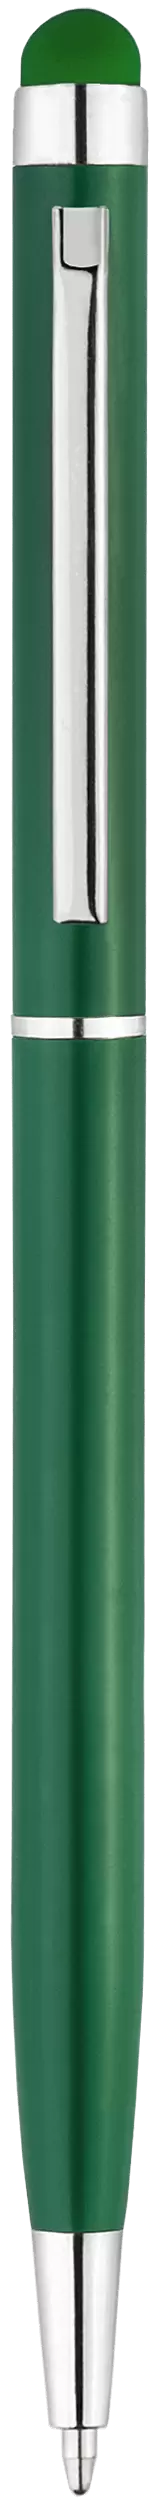 Ручка KENO NEW (Акция! 34.90 руб. от 300шт.) Зеленая 1117-02